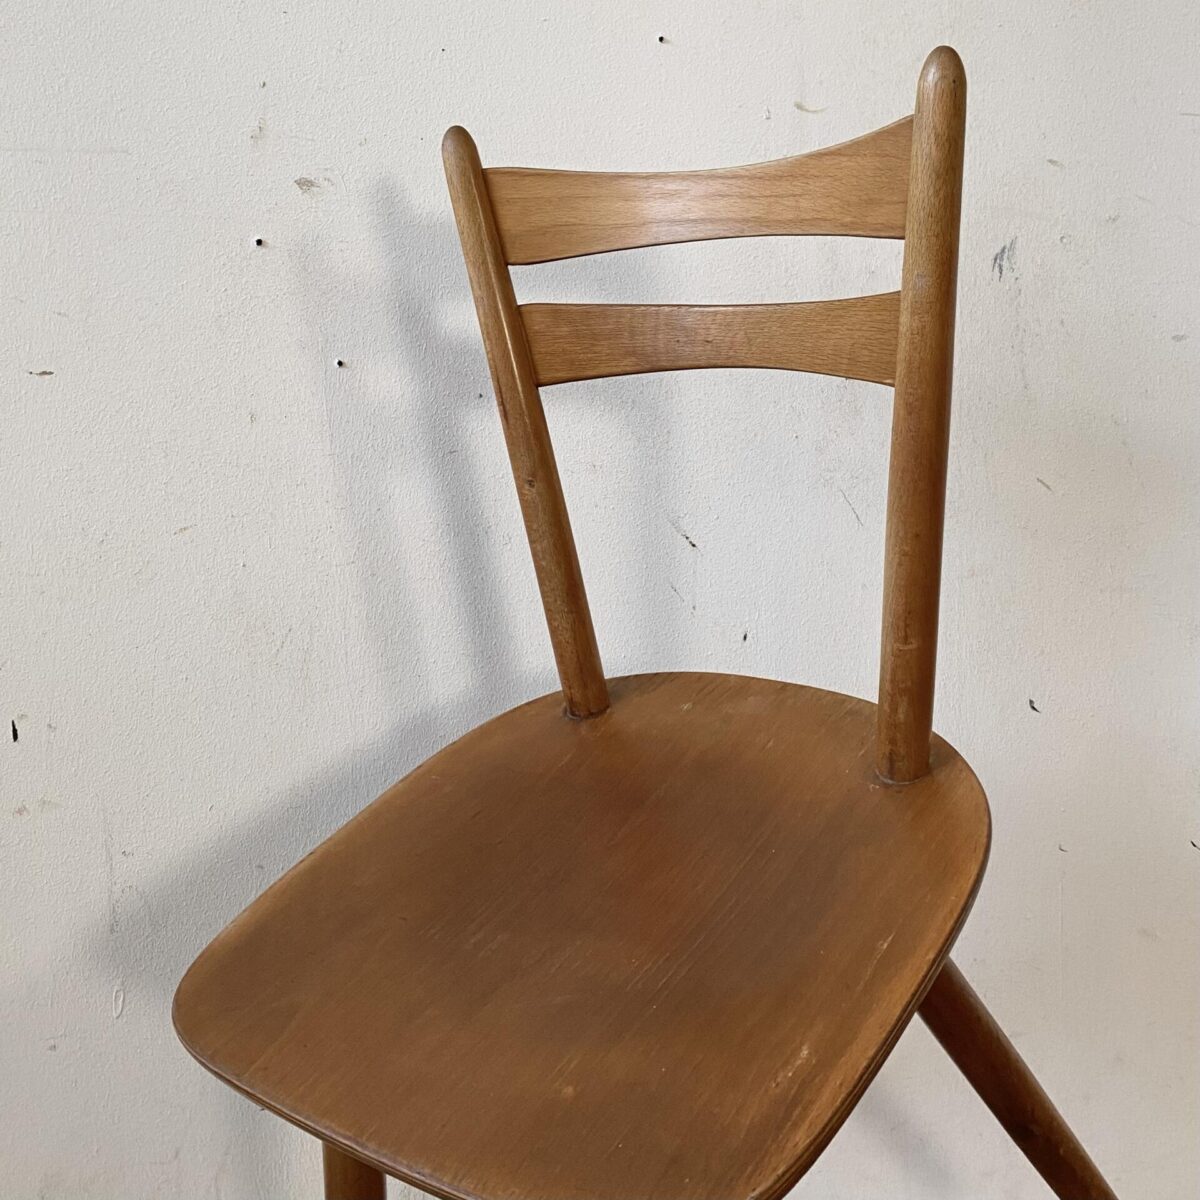 Deuxieme.shop 60er Jahre Stühle. 16 Stabellen Stühle aus Buchenholz. Mit gedrechselten konischen Rundholz Stäben. Preis pro Stuhl. Die Stühle sind in stabilem Zustand. Diverse kleinere Schrammen und Gebrauchsspuren. Ein Hersteller ist nicht ersichtlich. 